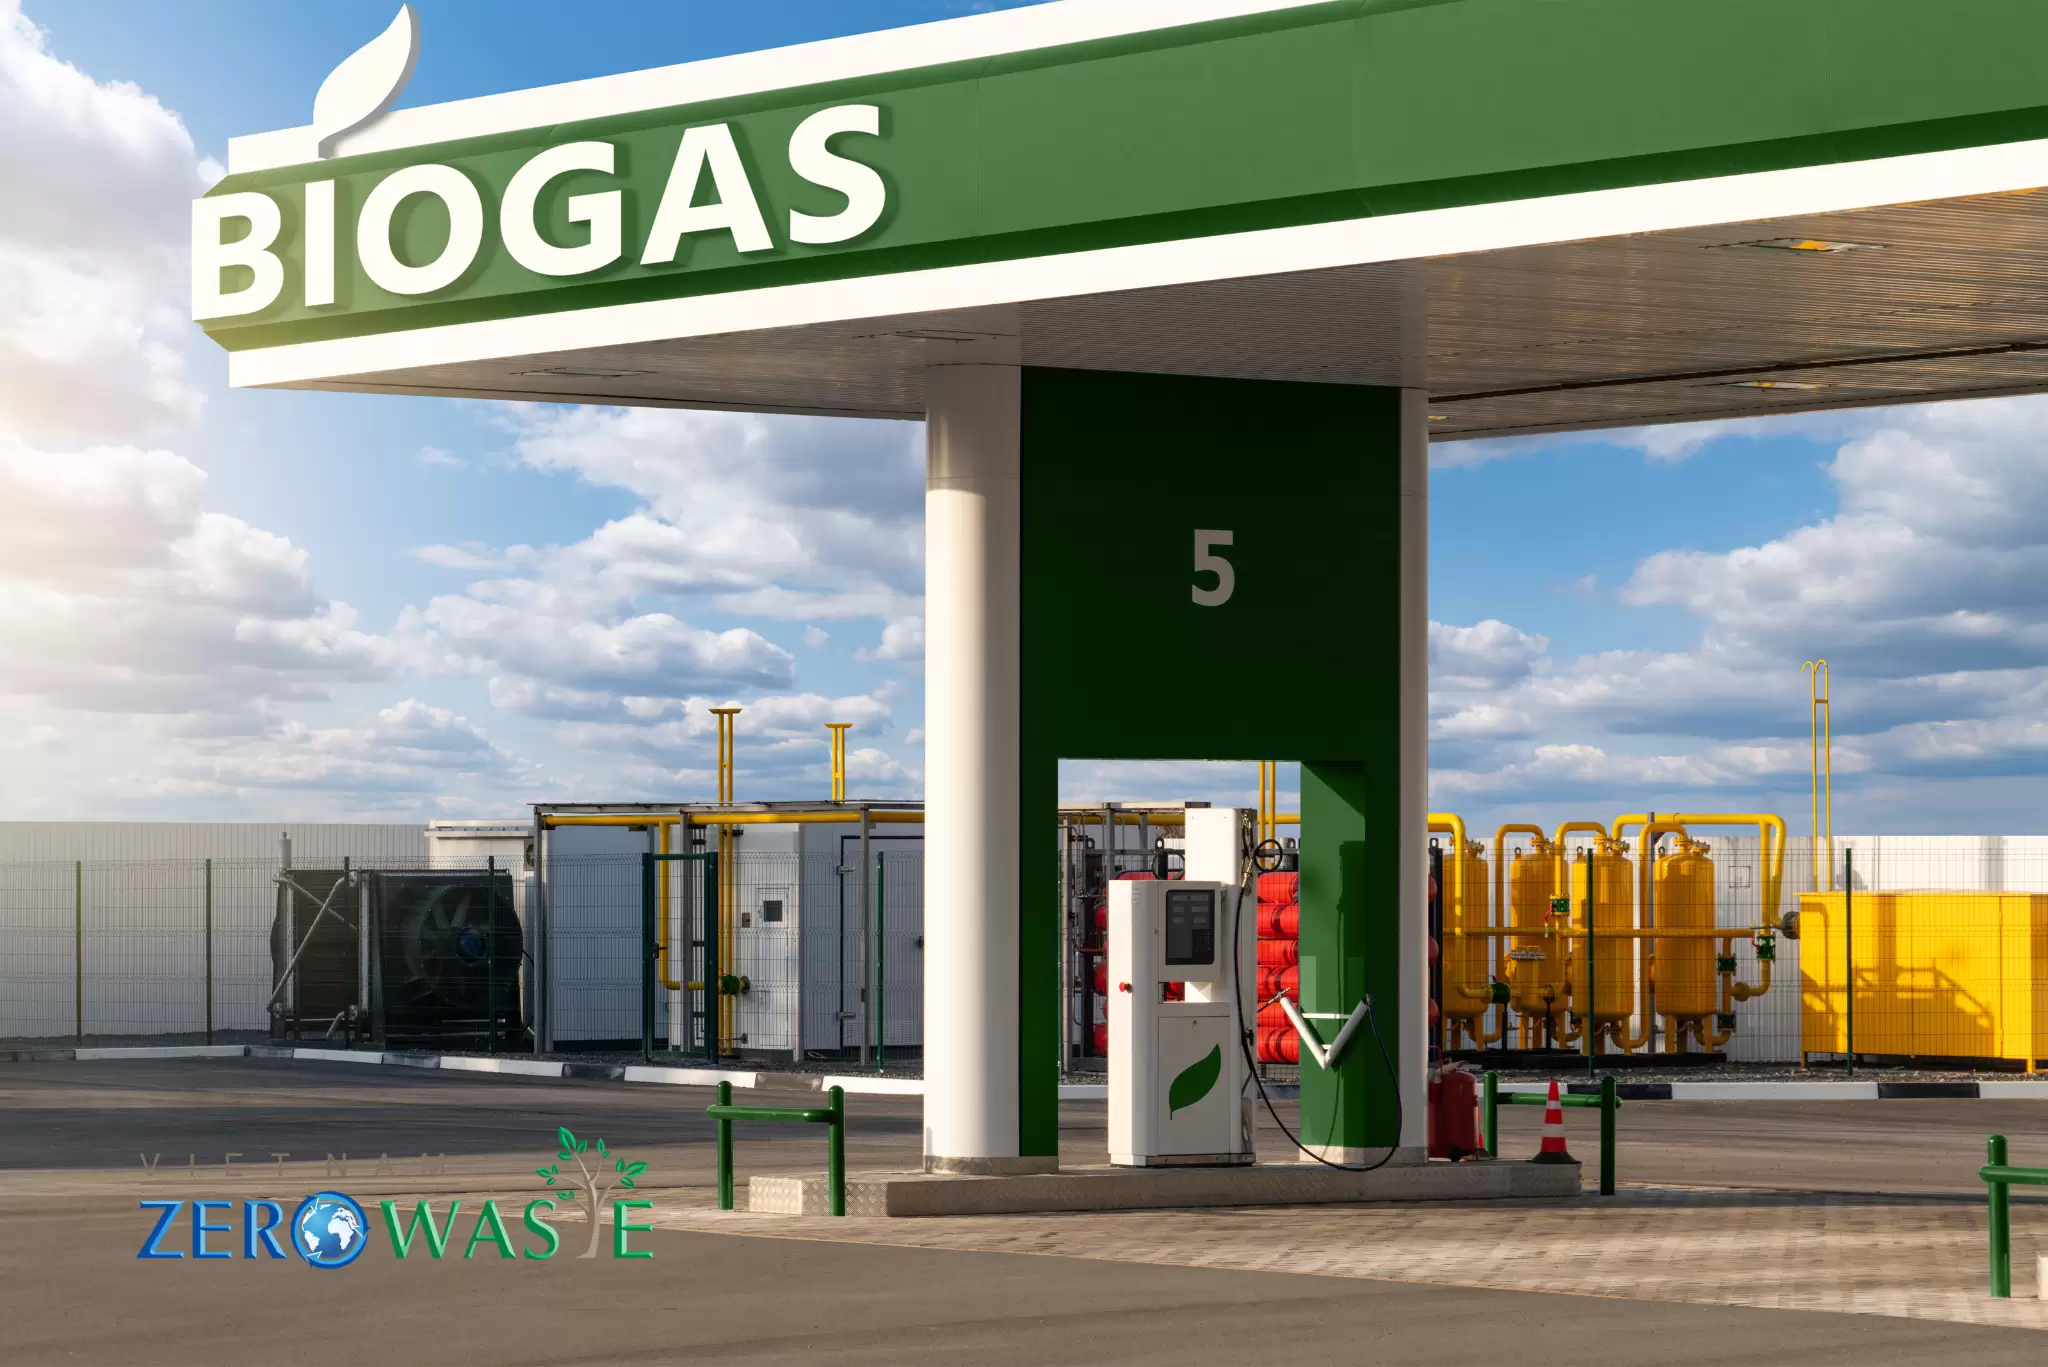 Nhiên liệu biogas là gì?